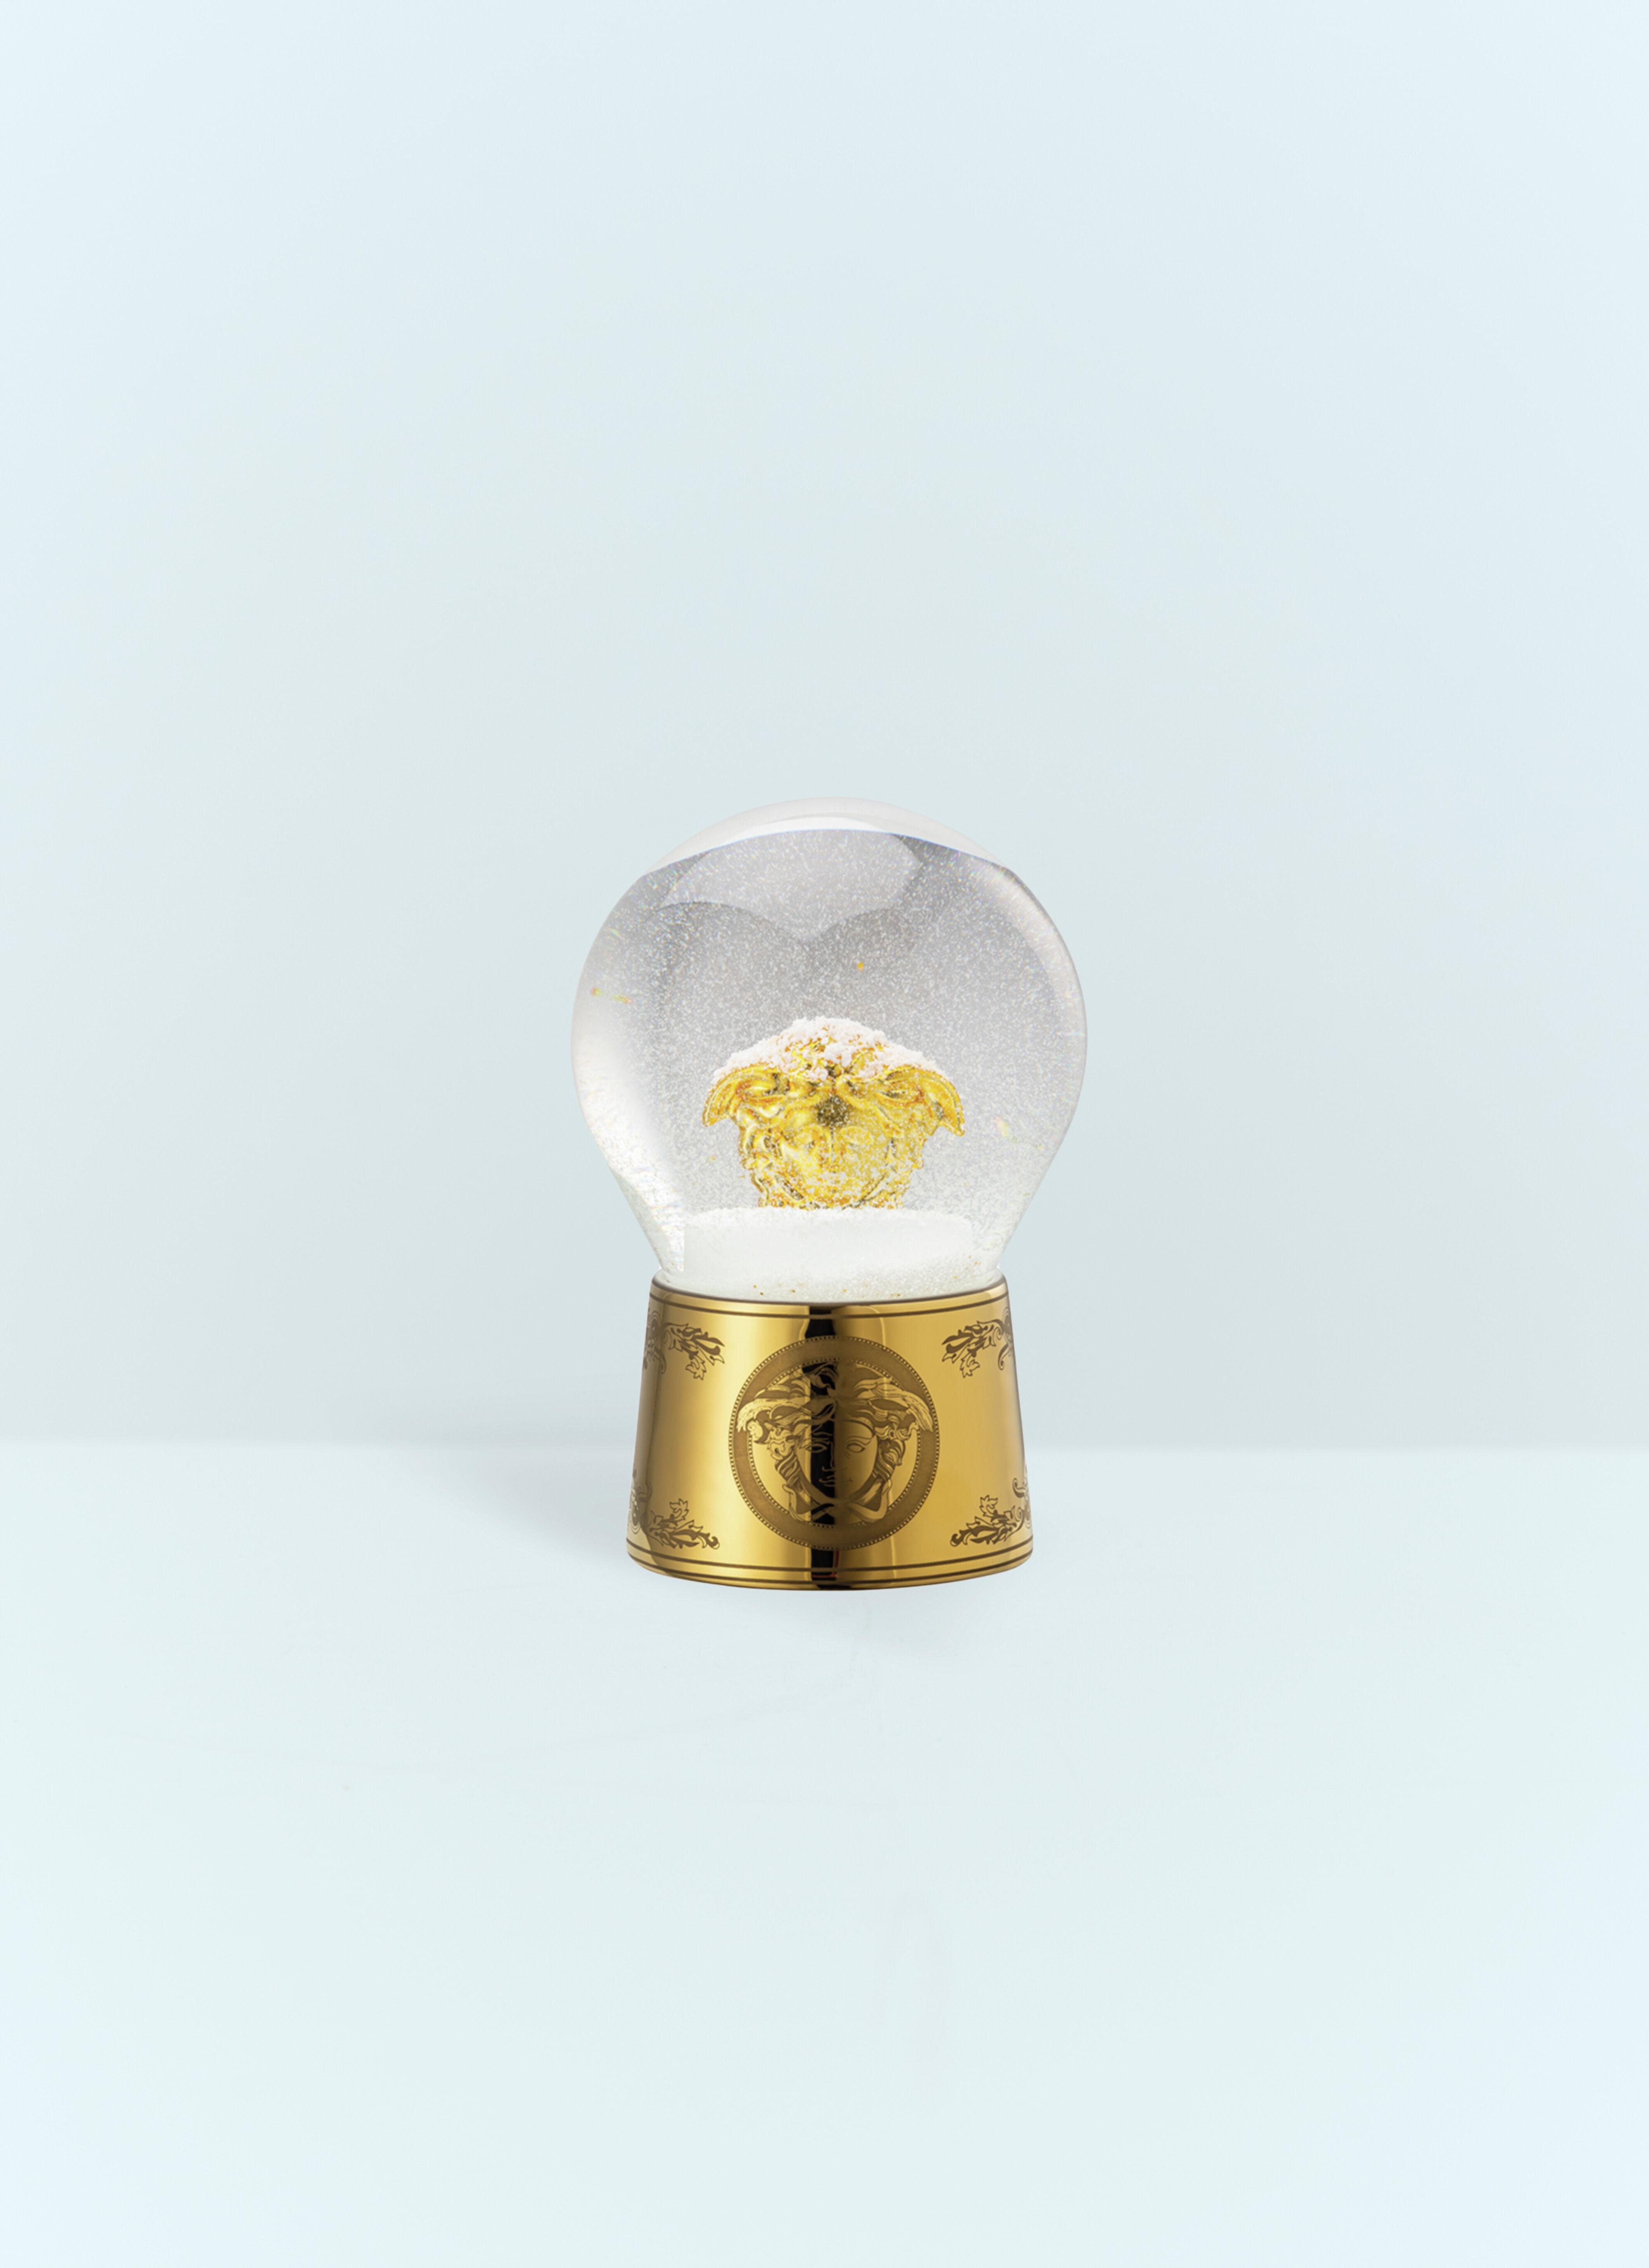 Rosenthal Small Medusa Snow Sphere Gold wps0691114